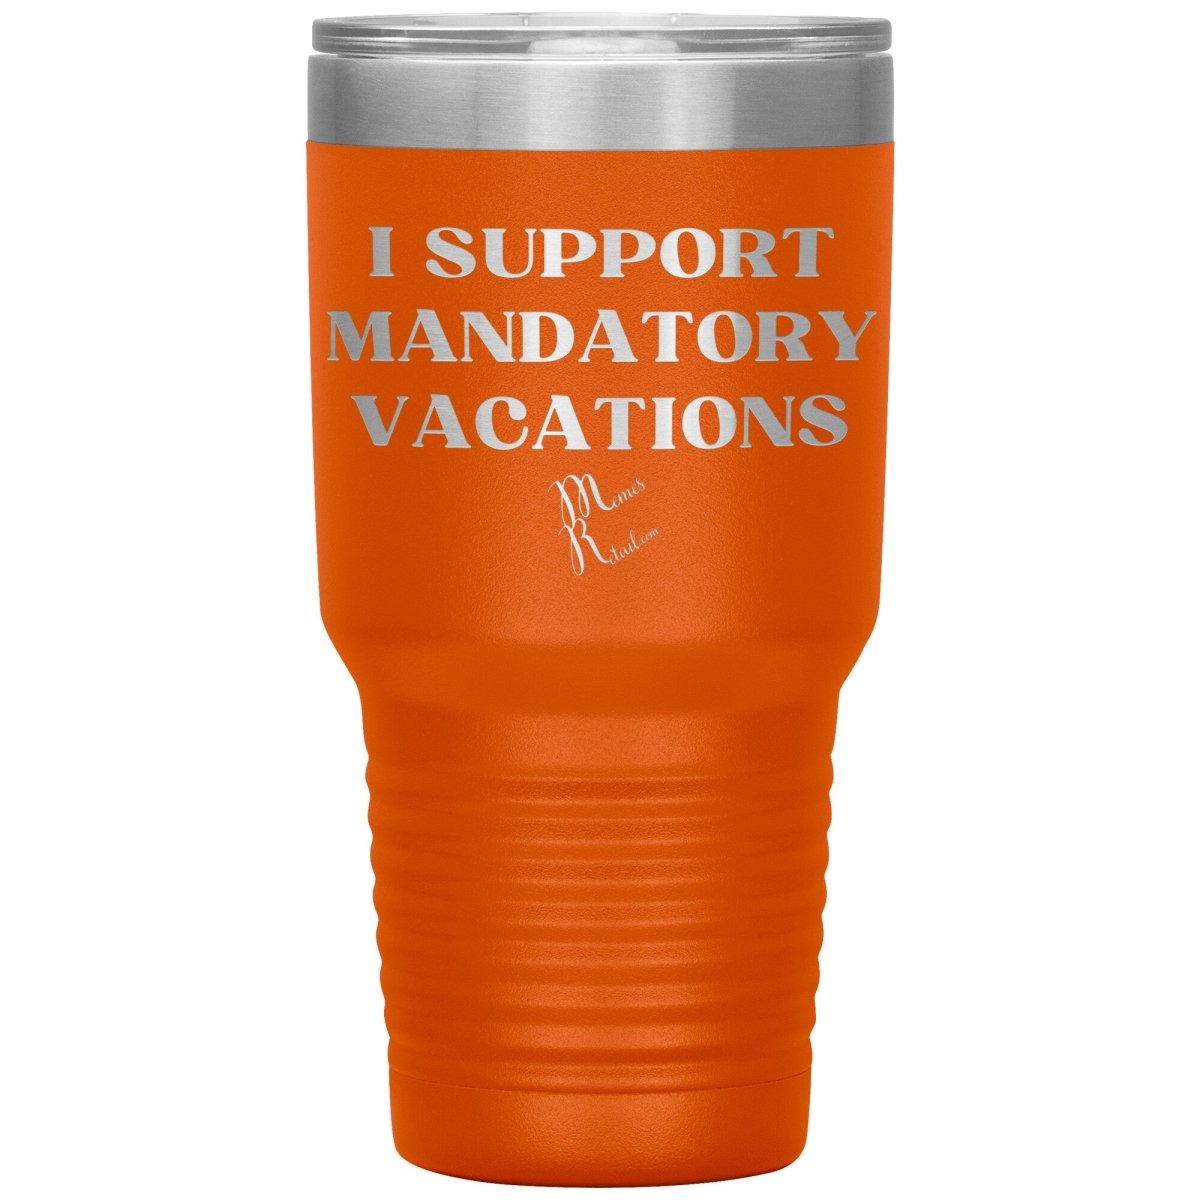 I support mandatory vacations Tumblers, 30oz Insulated Tumbler / Orange - MemesRetail.com